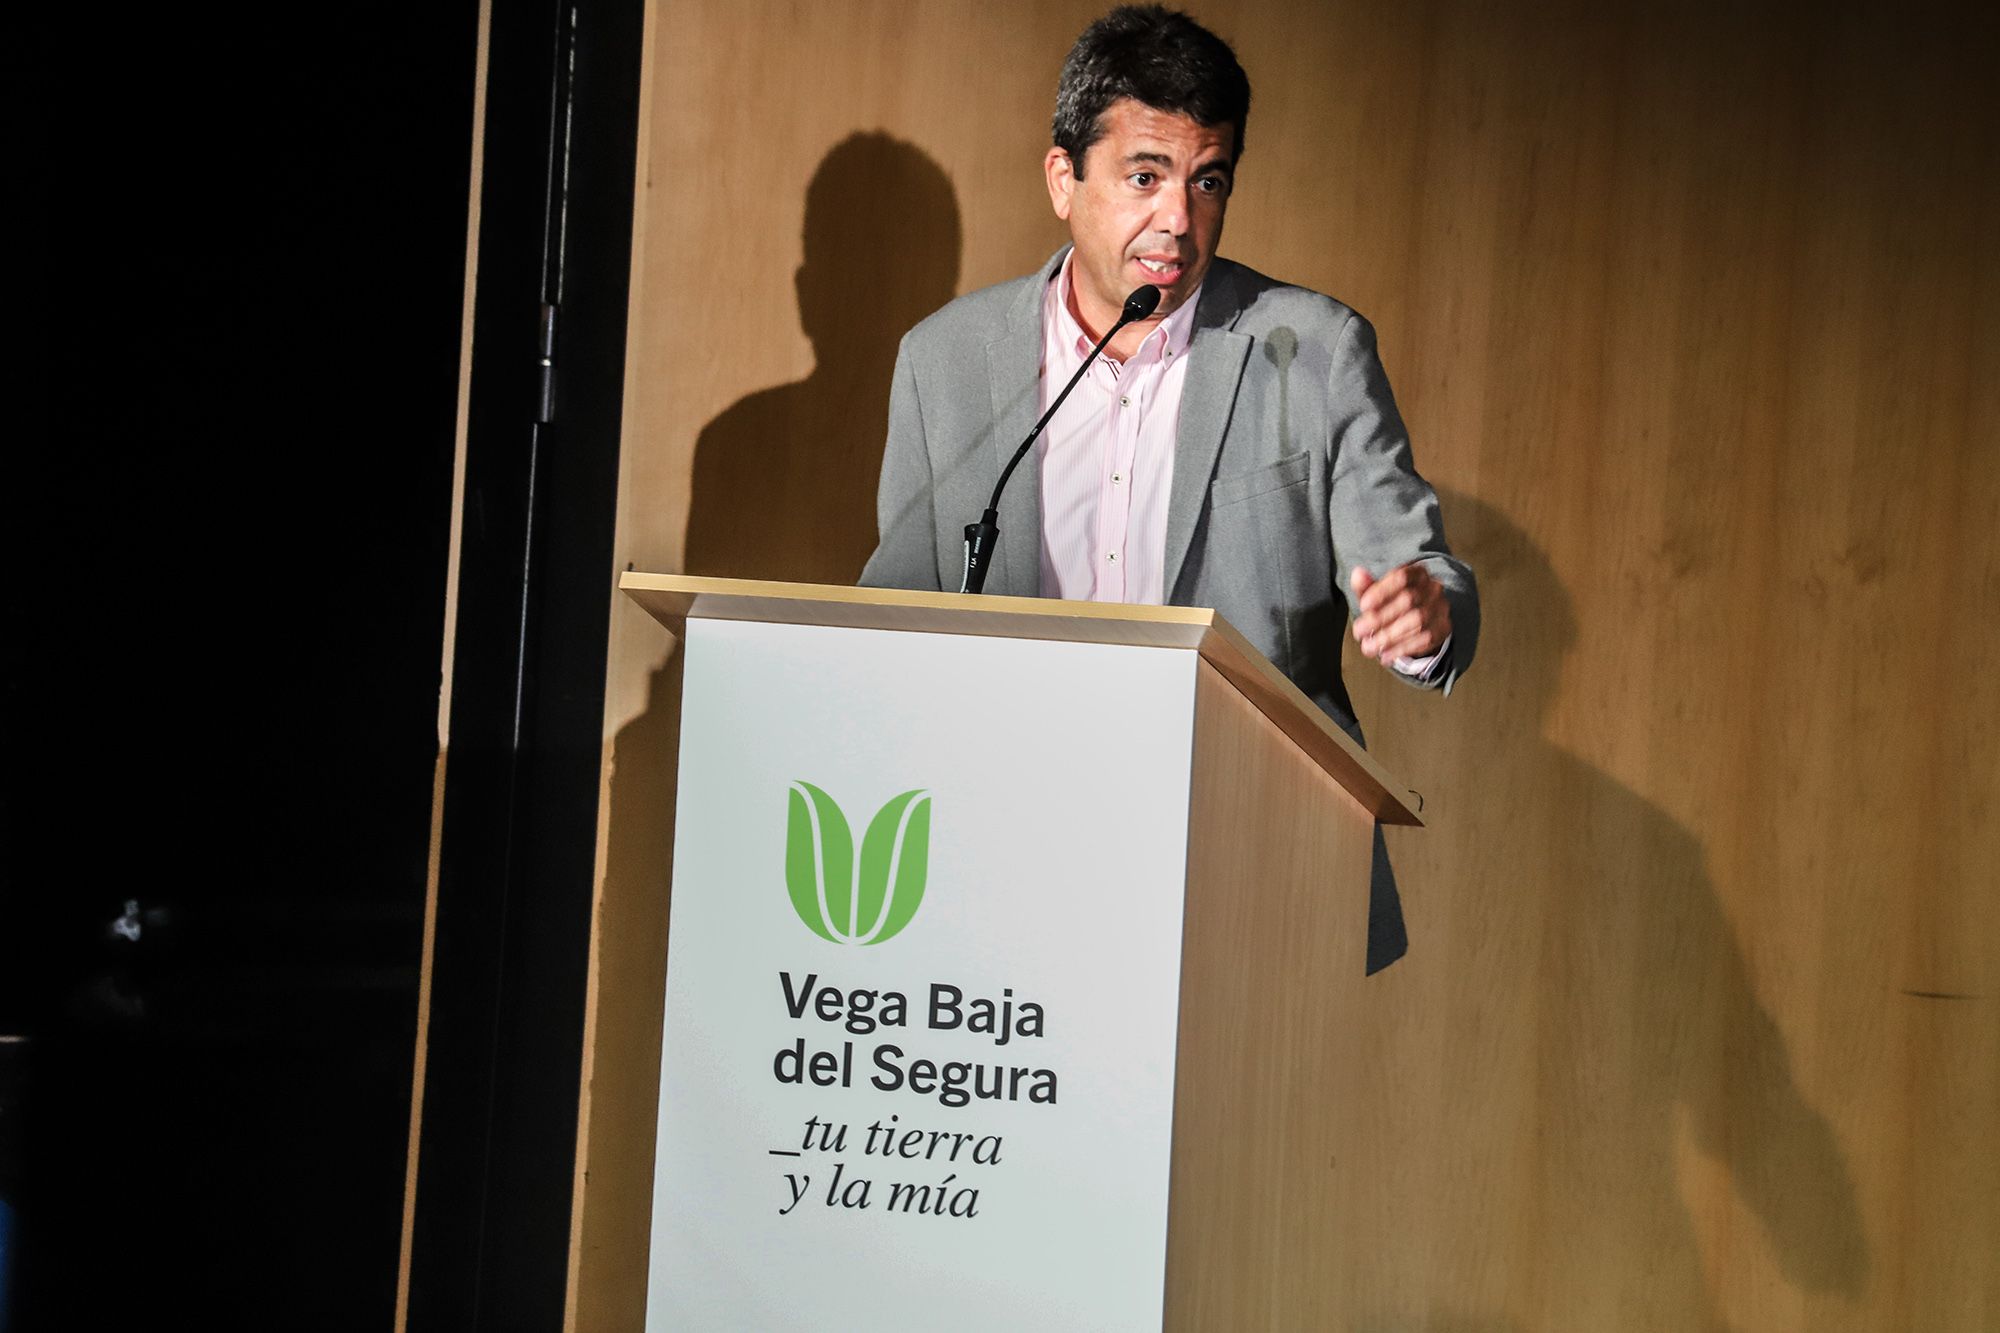 Presentación de la marca Territorio "Vega Baja del Segura" en Cox